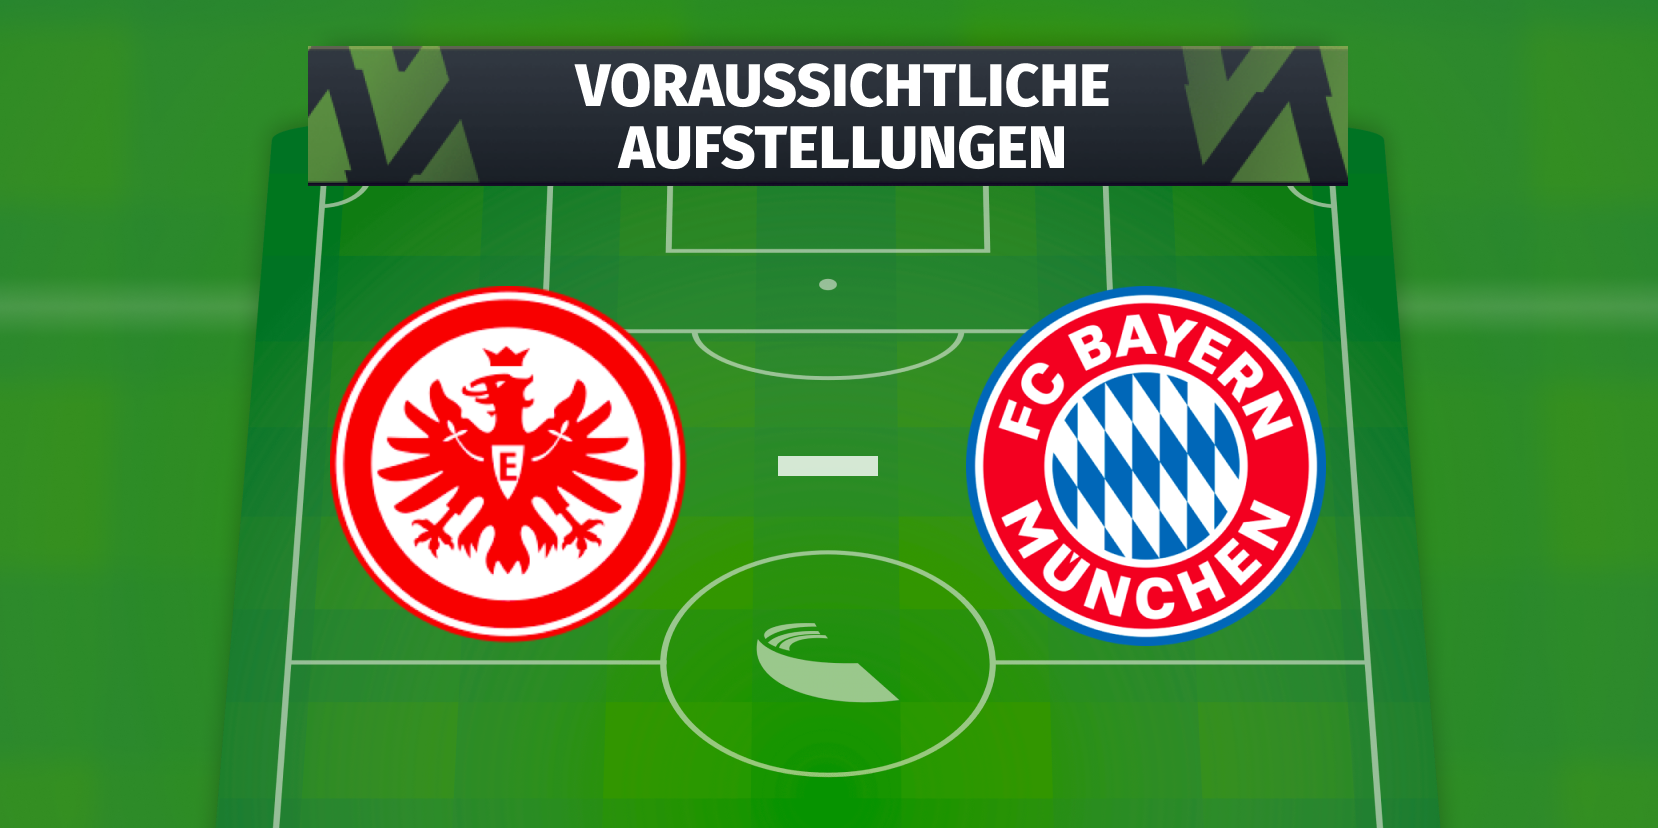 Eintracht Frankfurt - FC Bayern München Die voraussichtlichen Aufstellungen